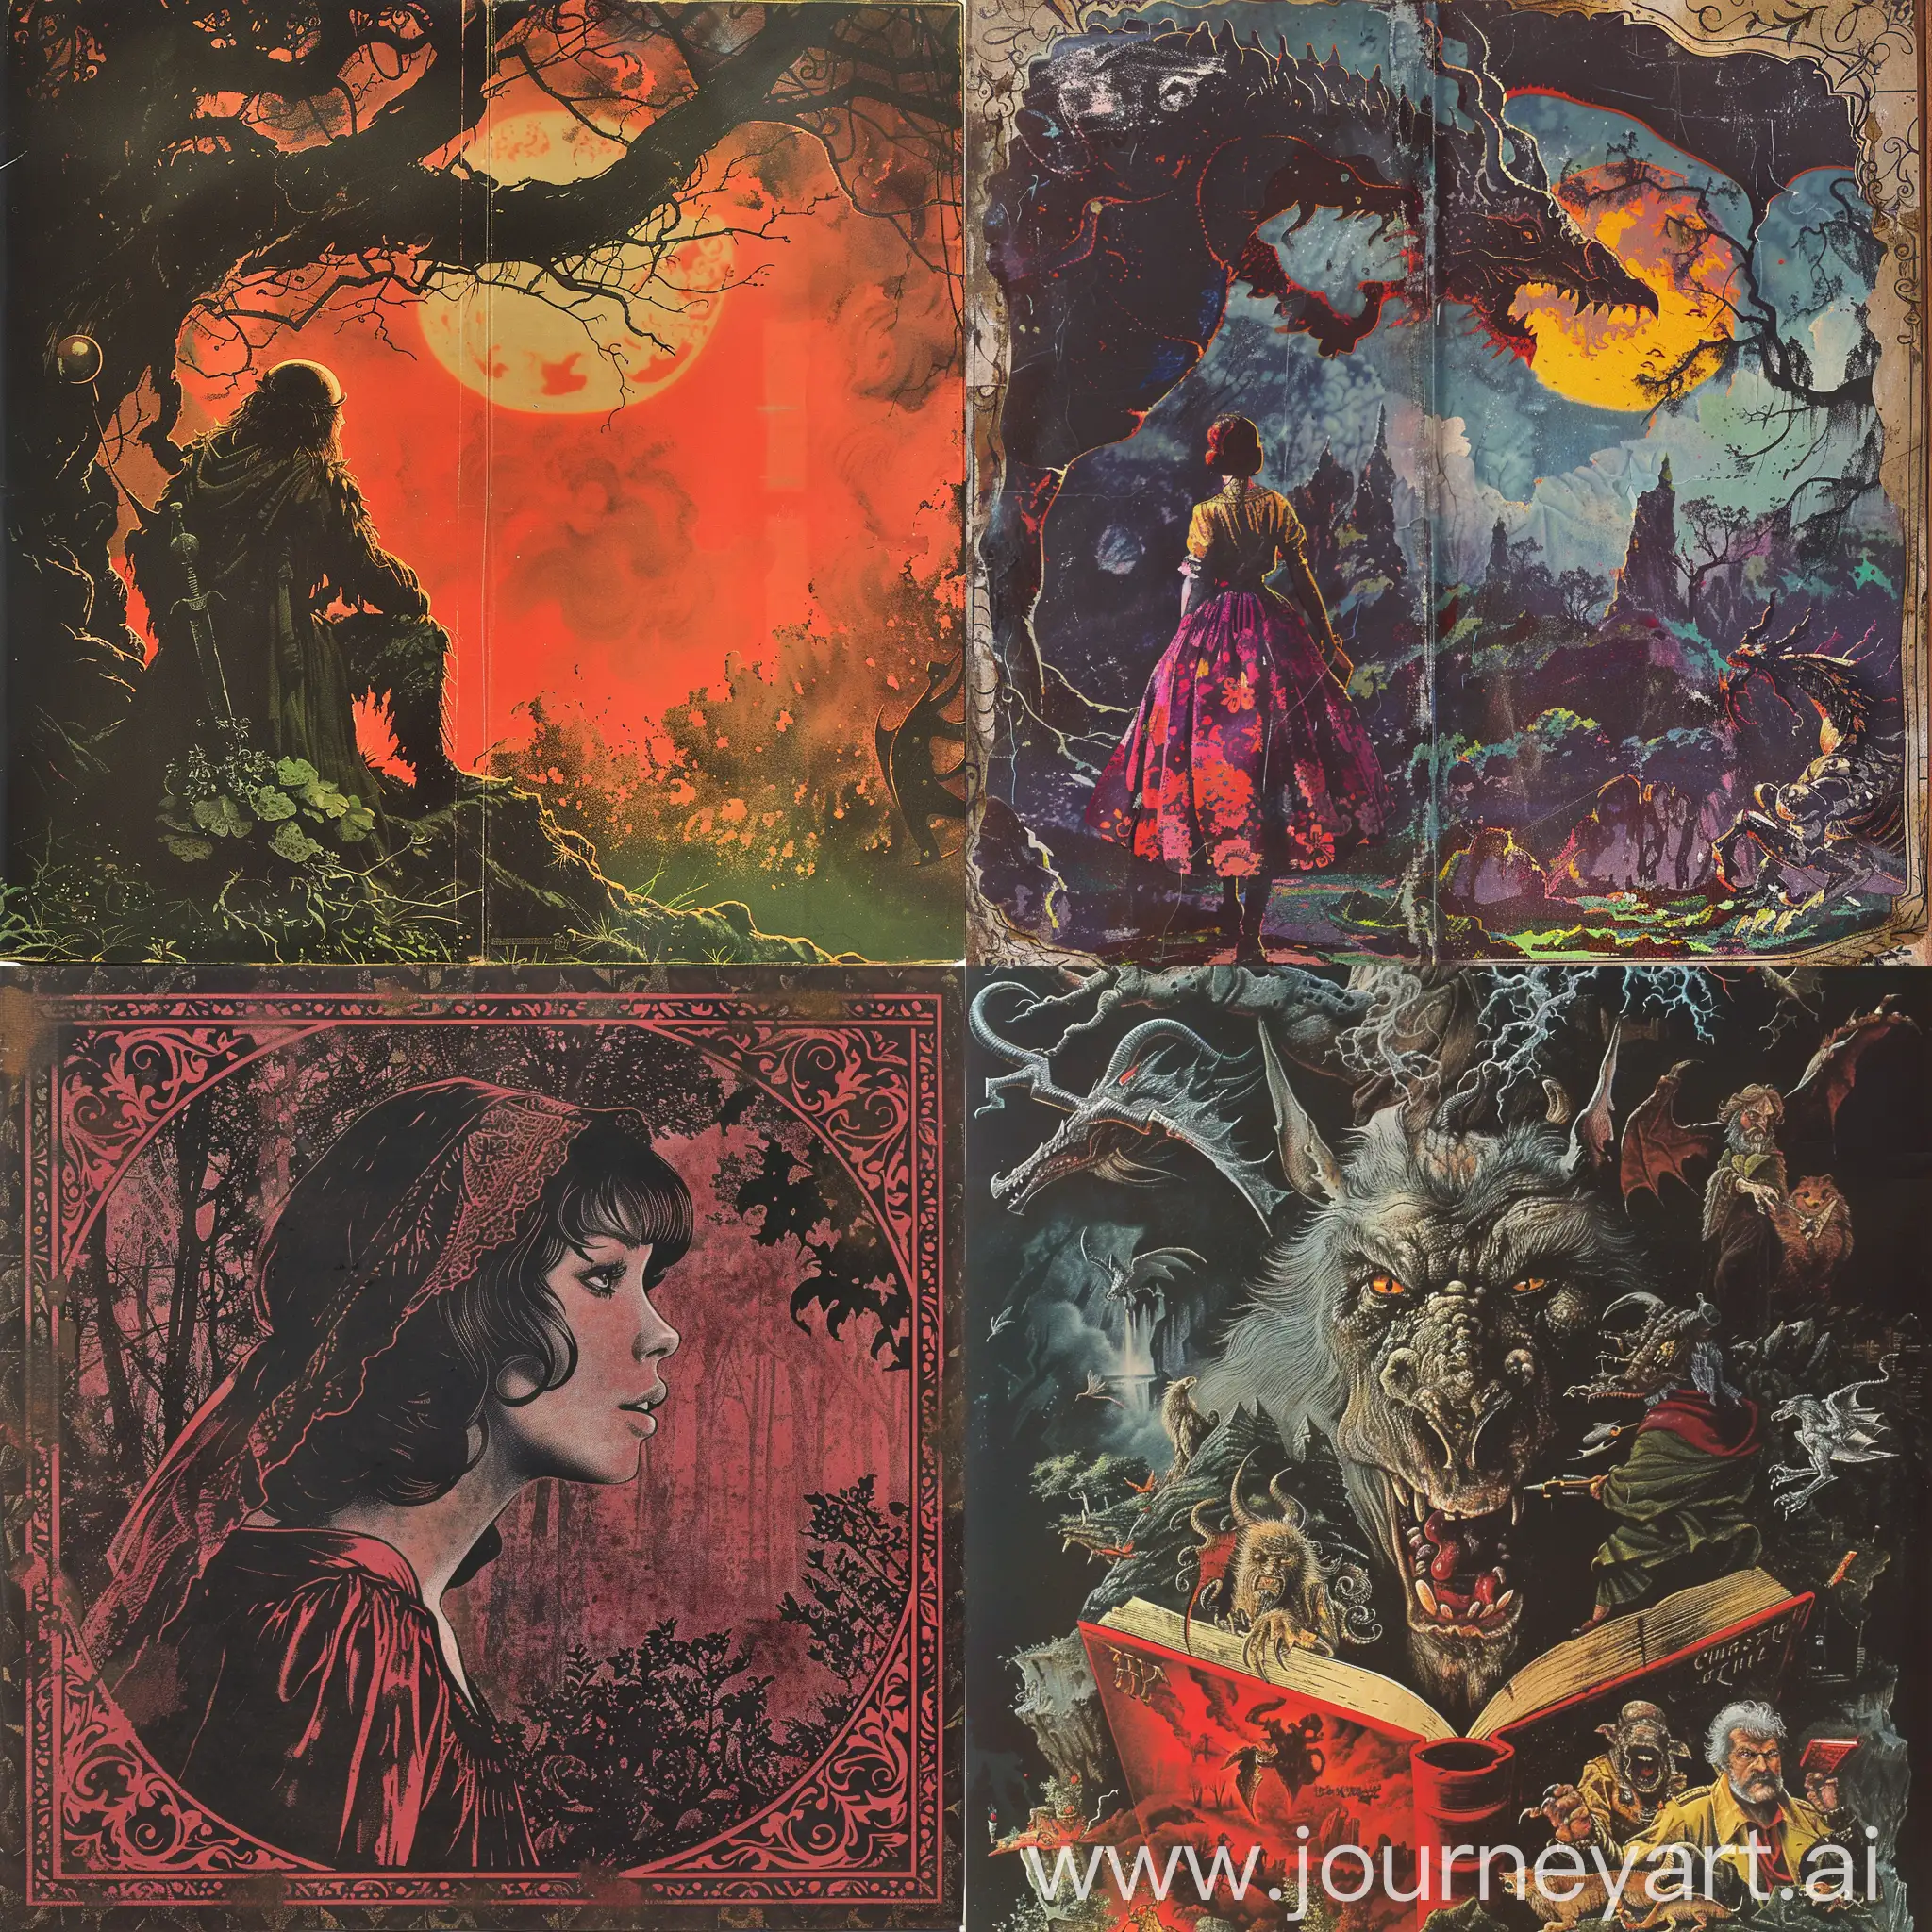 1970s-Dark-Fantasy-Books-Cover-Paper-Art-Caperucita-Roja-Style-Paper-Drawing